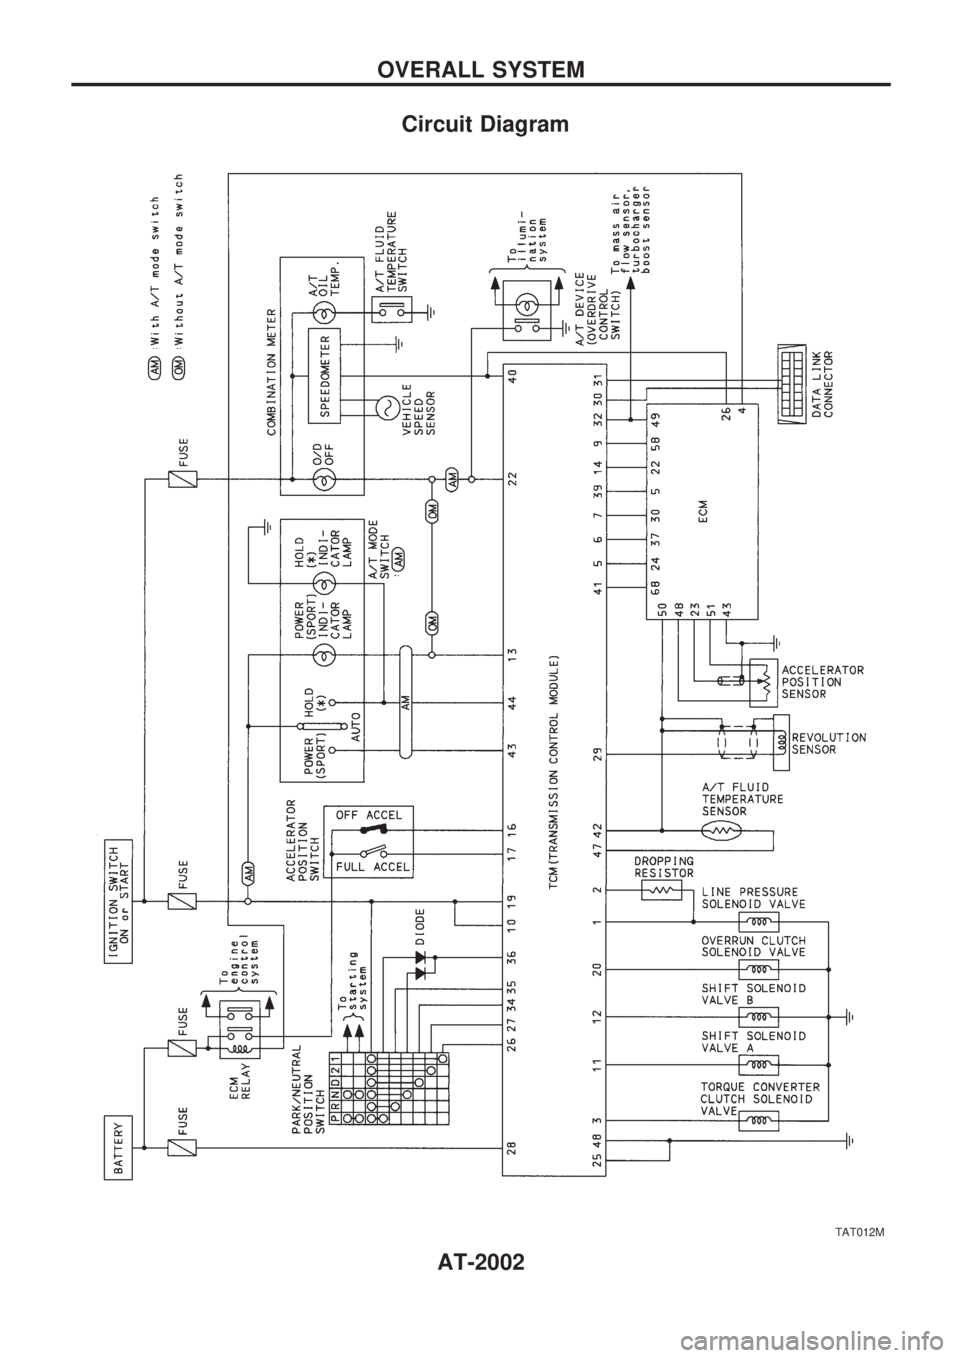 NISSAN PATROL 2001  Electronic Repair Manual Circuit Diagram
TAT012M
OVERALL SYSTEM
AT-2002 